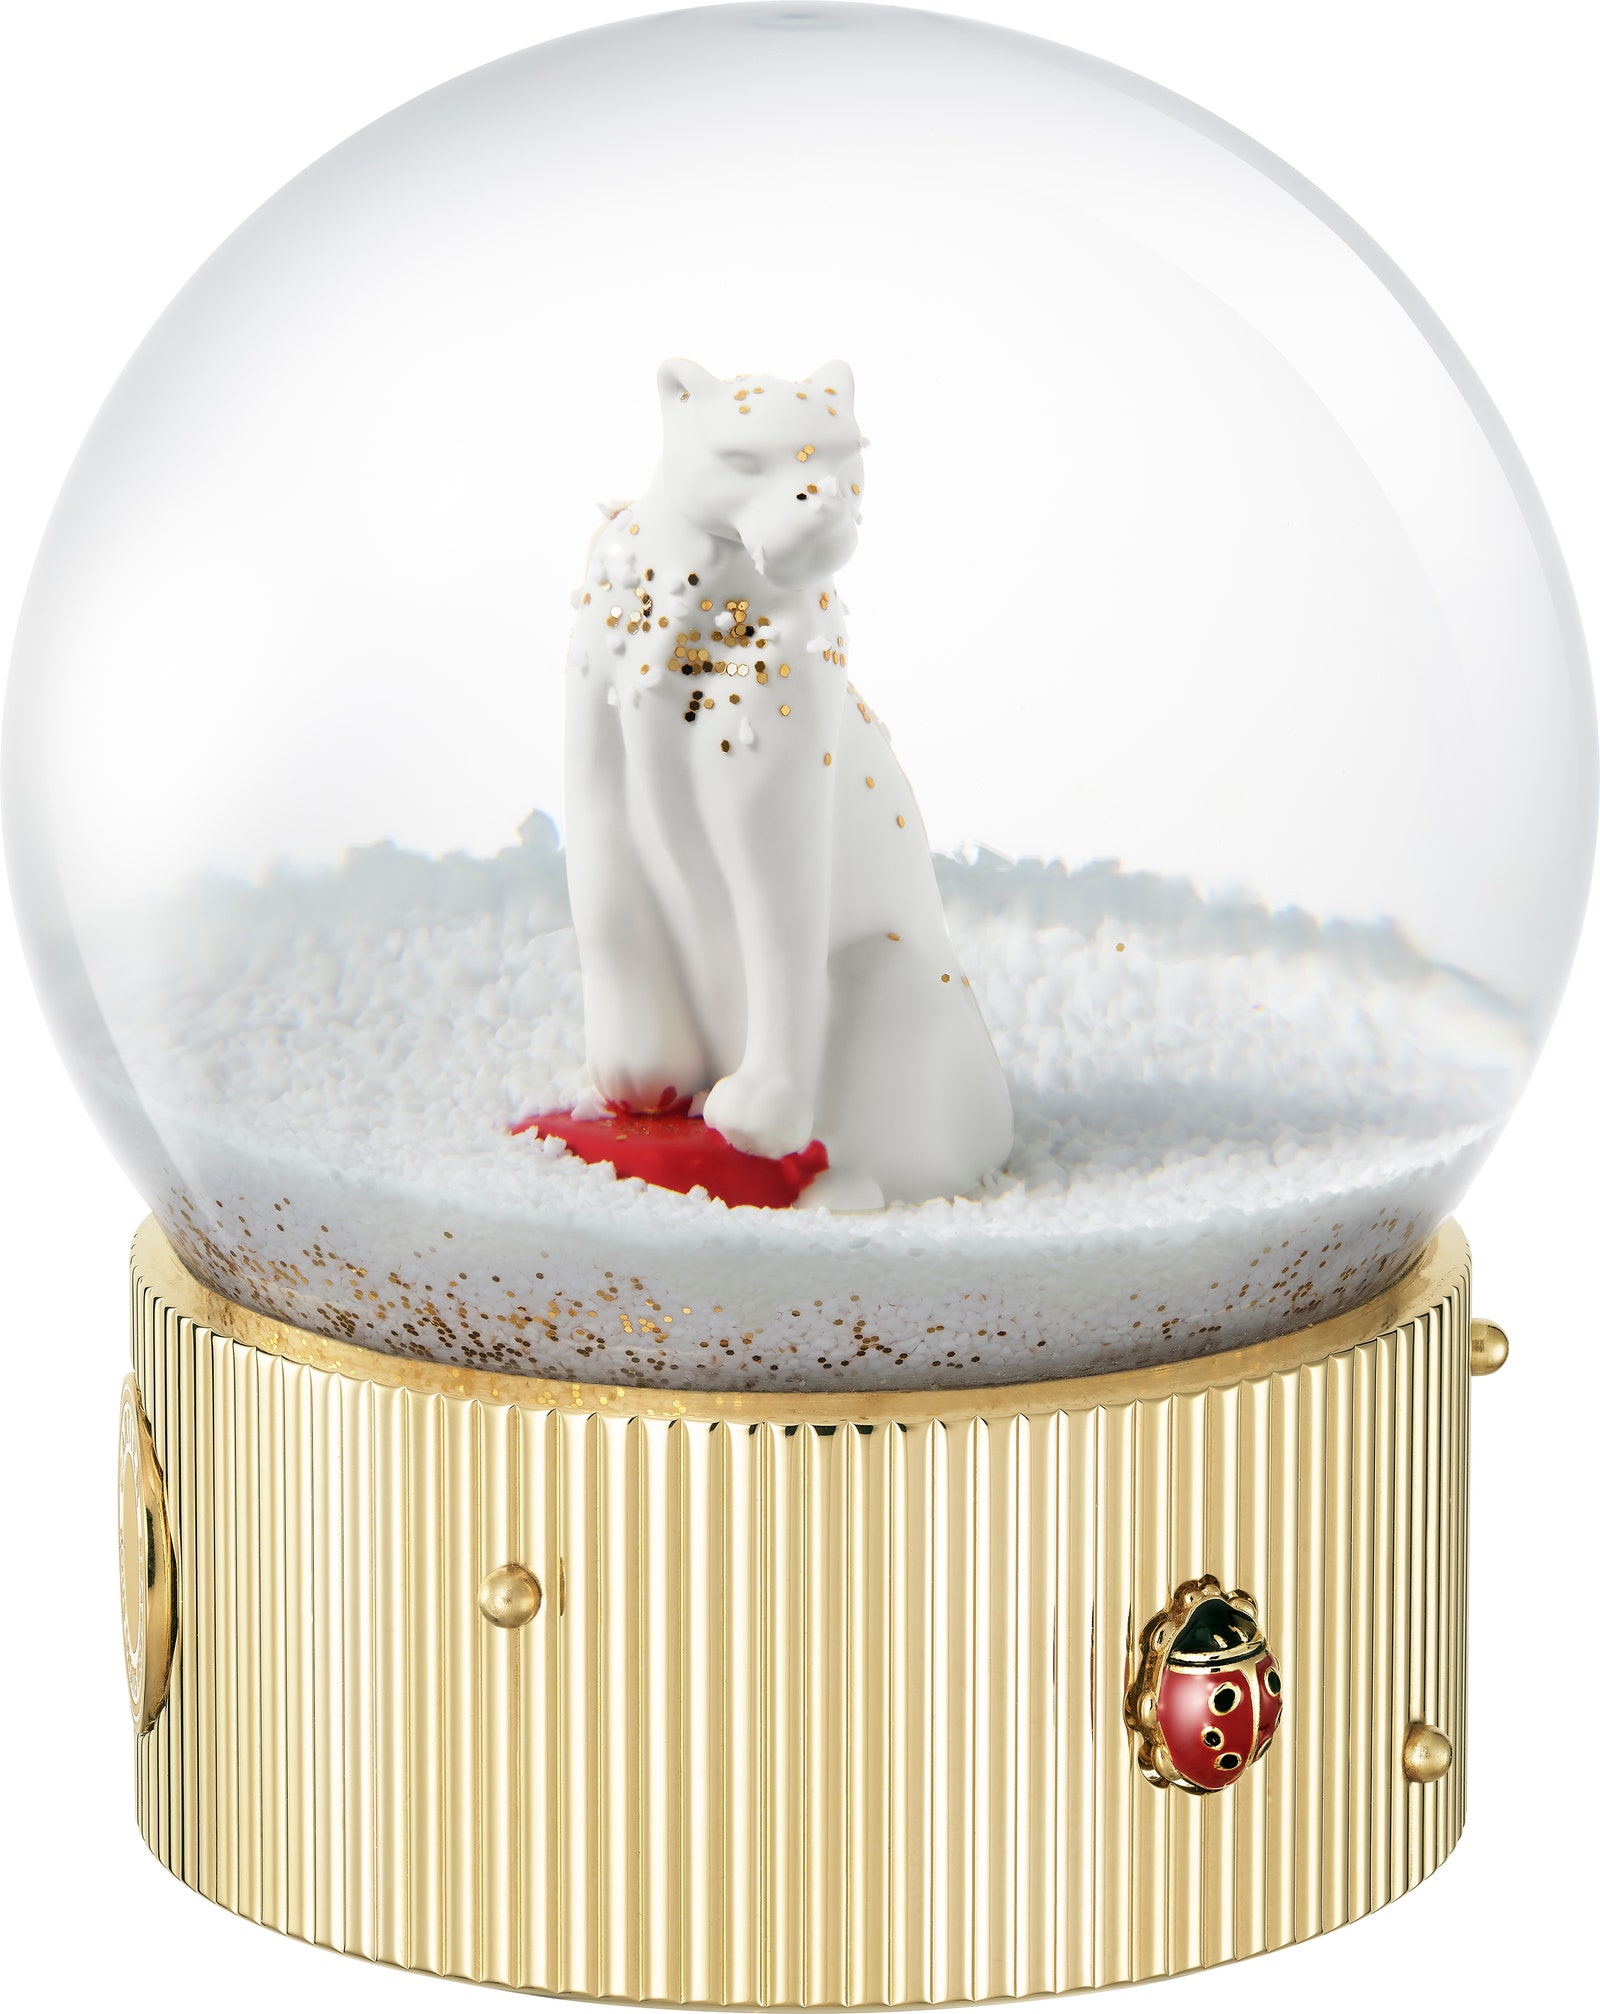 Снежный шар с пантерой — главным символом Cartier.